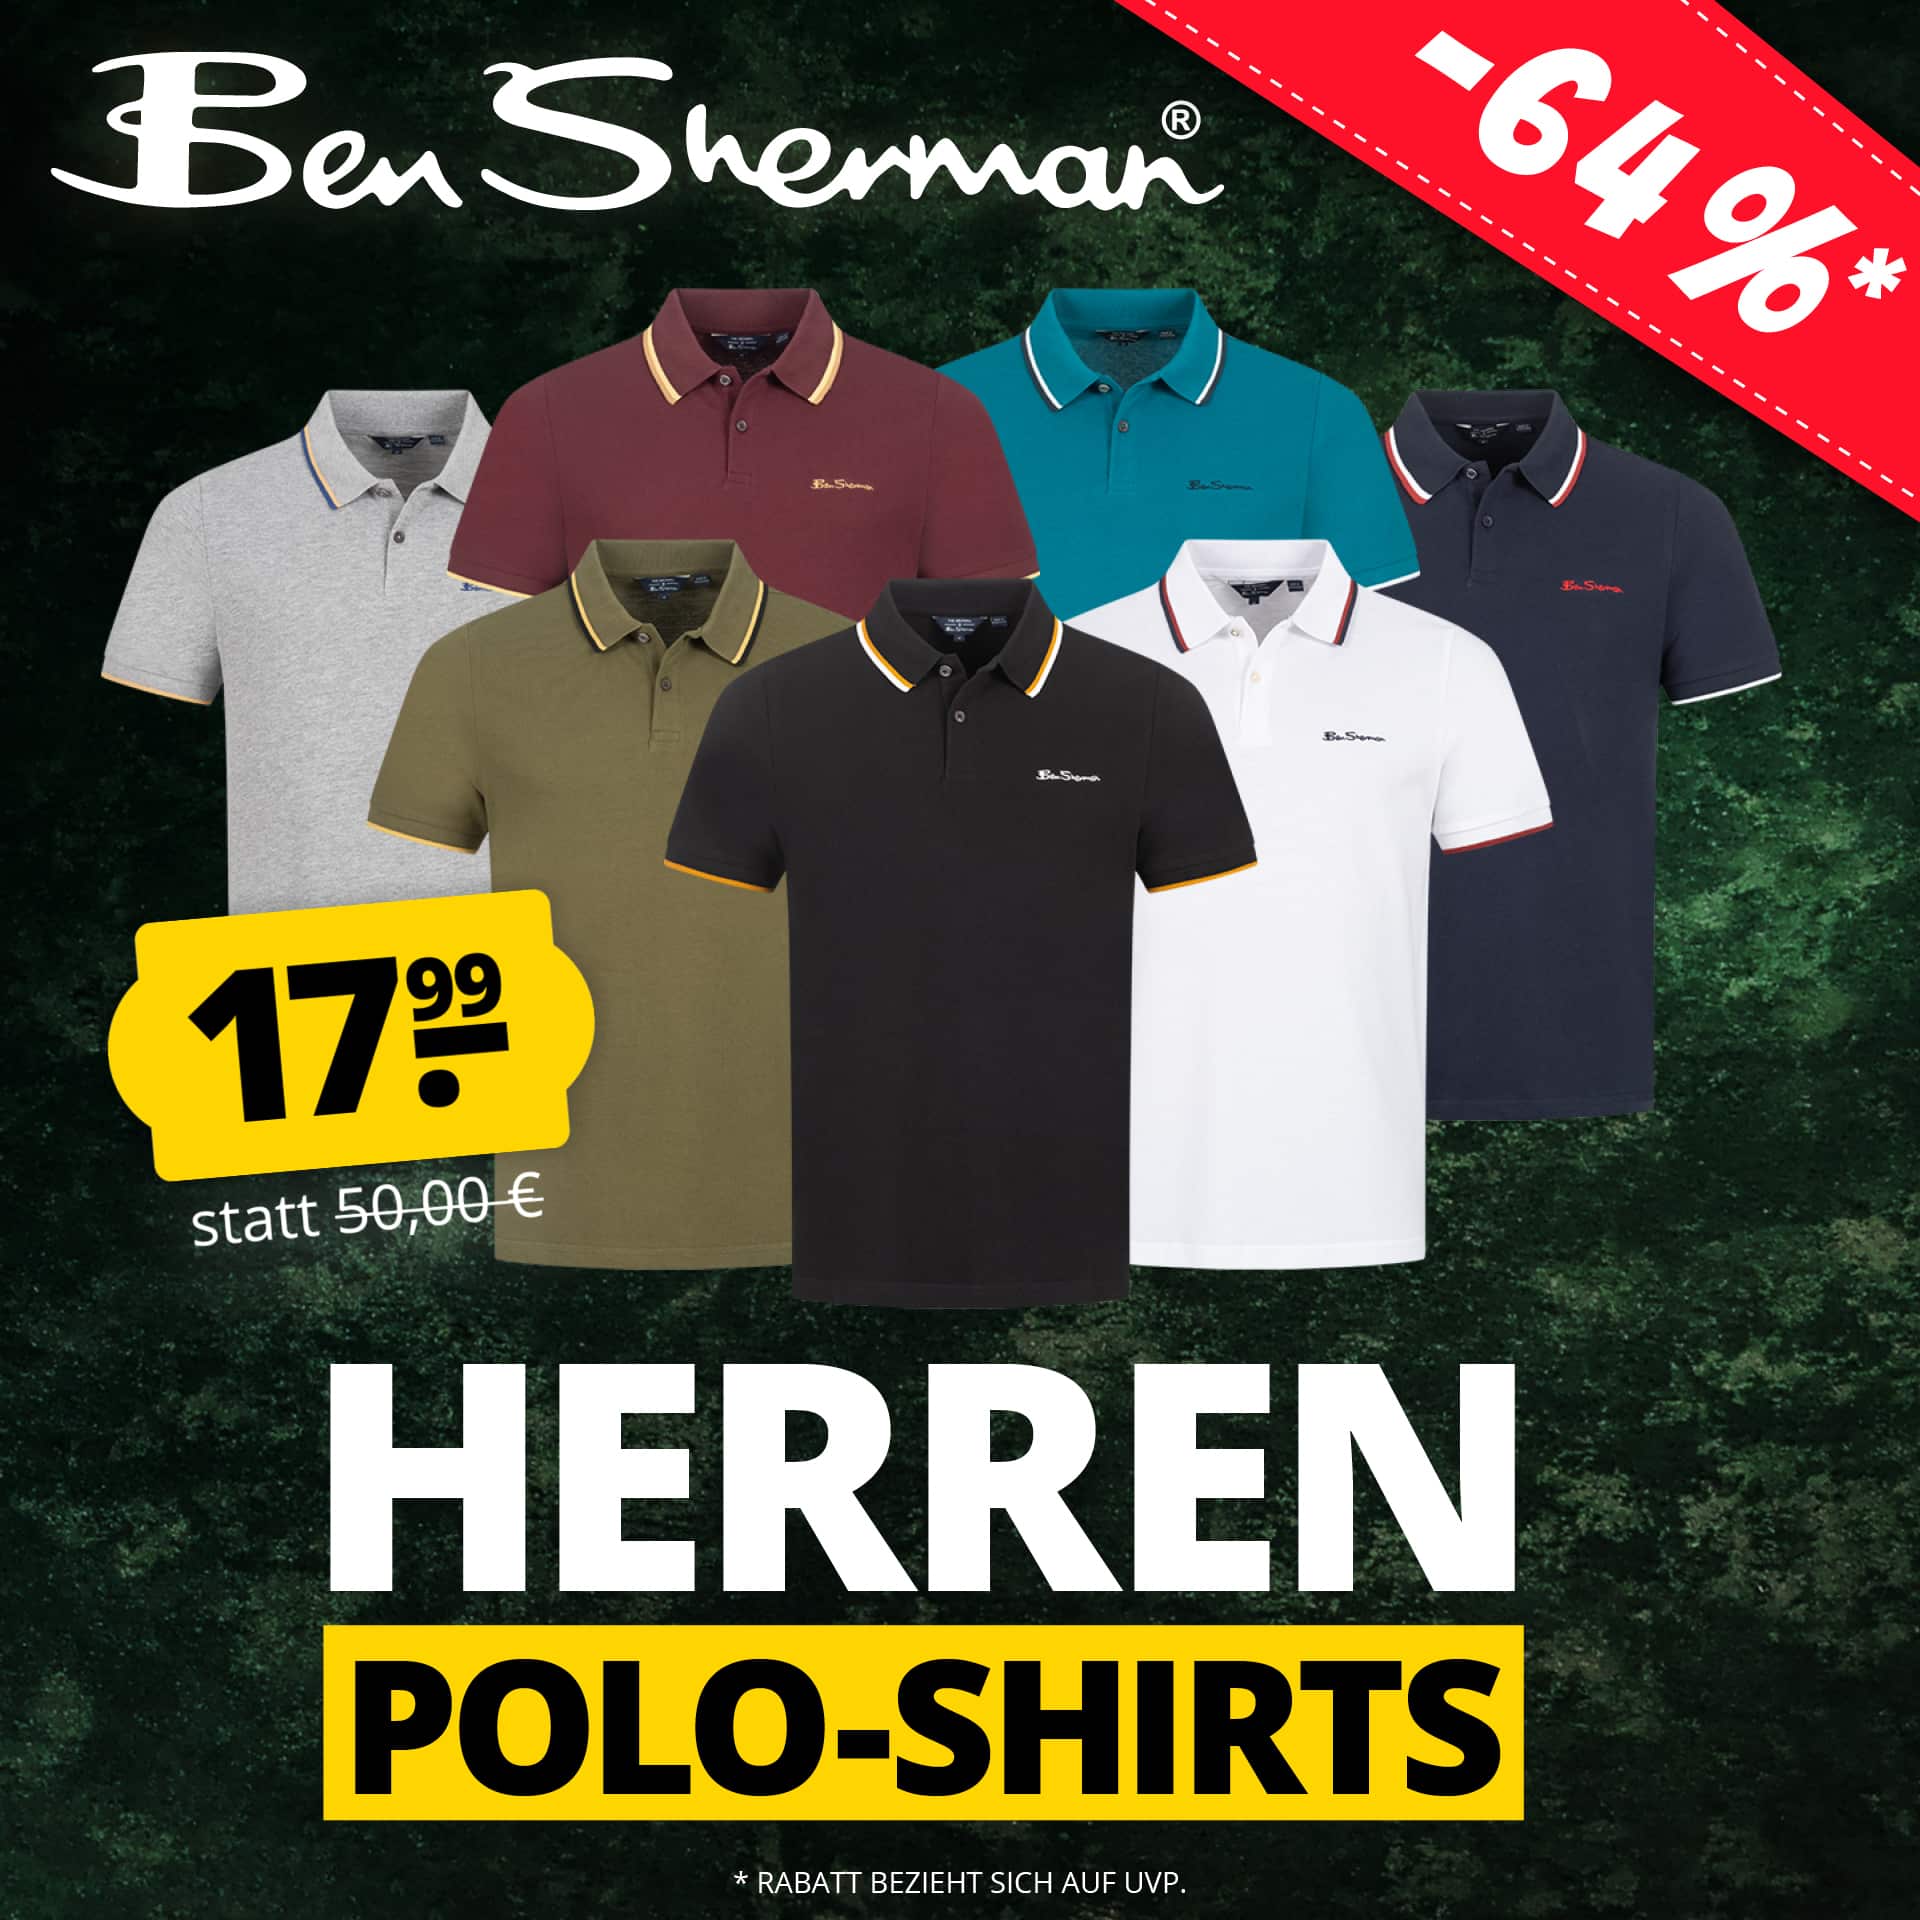 Ben Sherman Herren Polo-Shirt für je 17,99€ zzgl. Versand 👕 14 versch. Farben